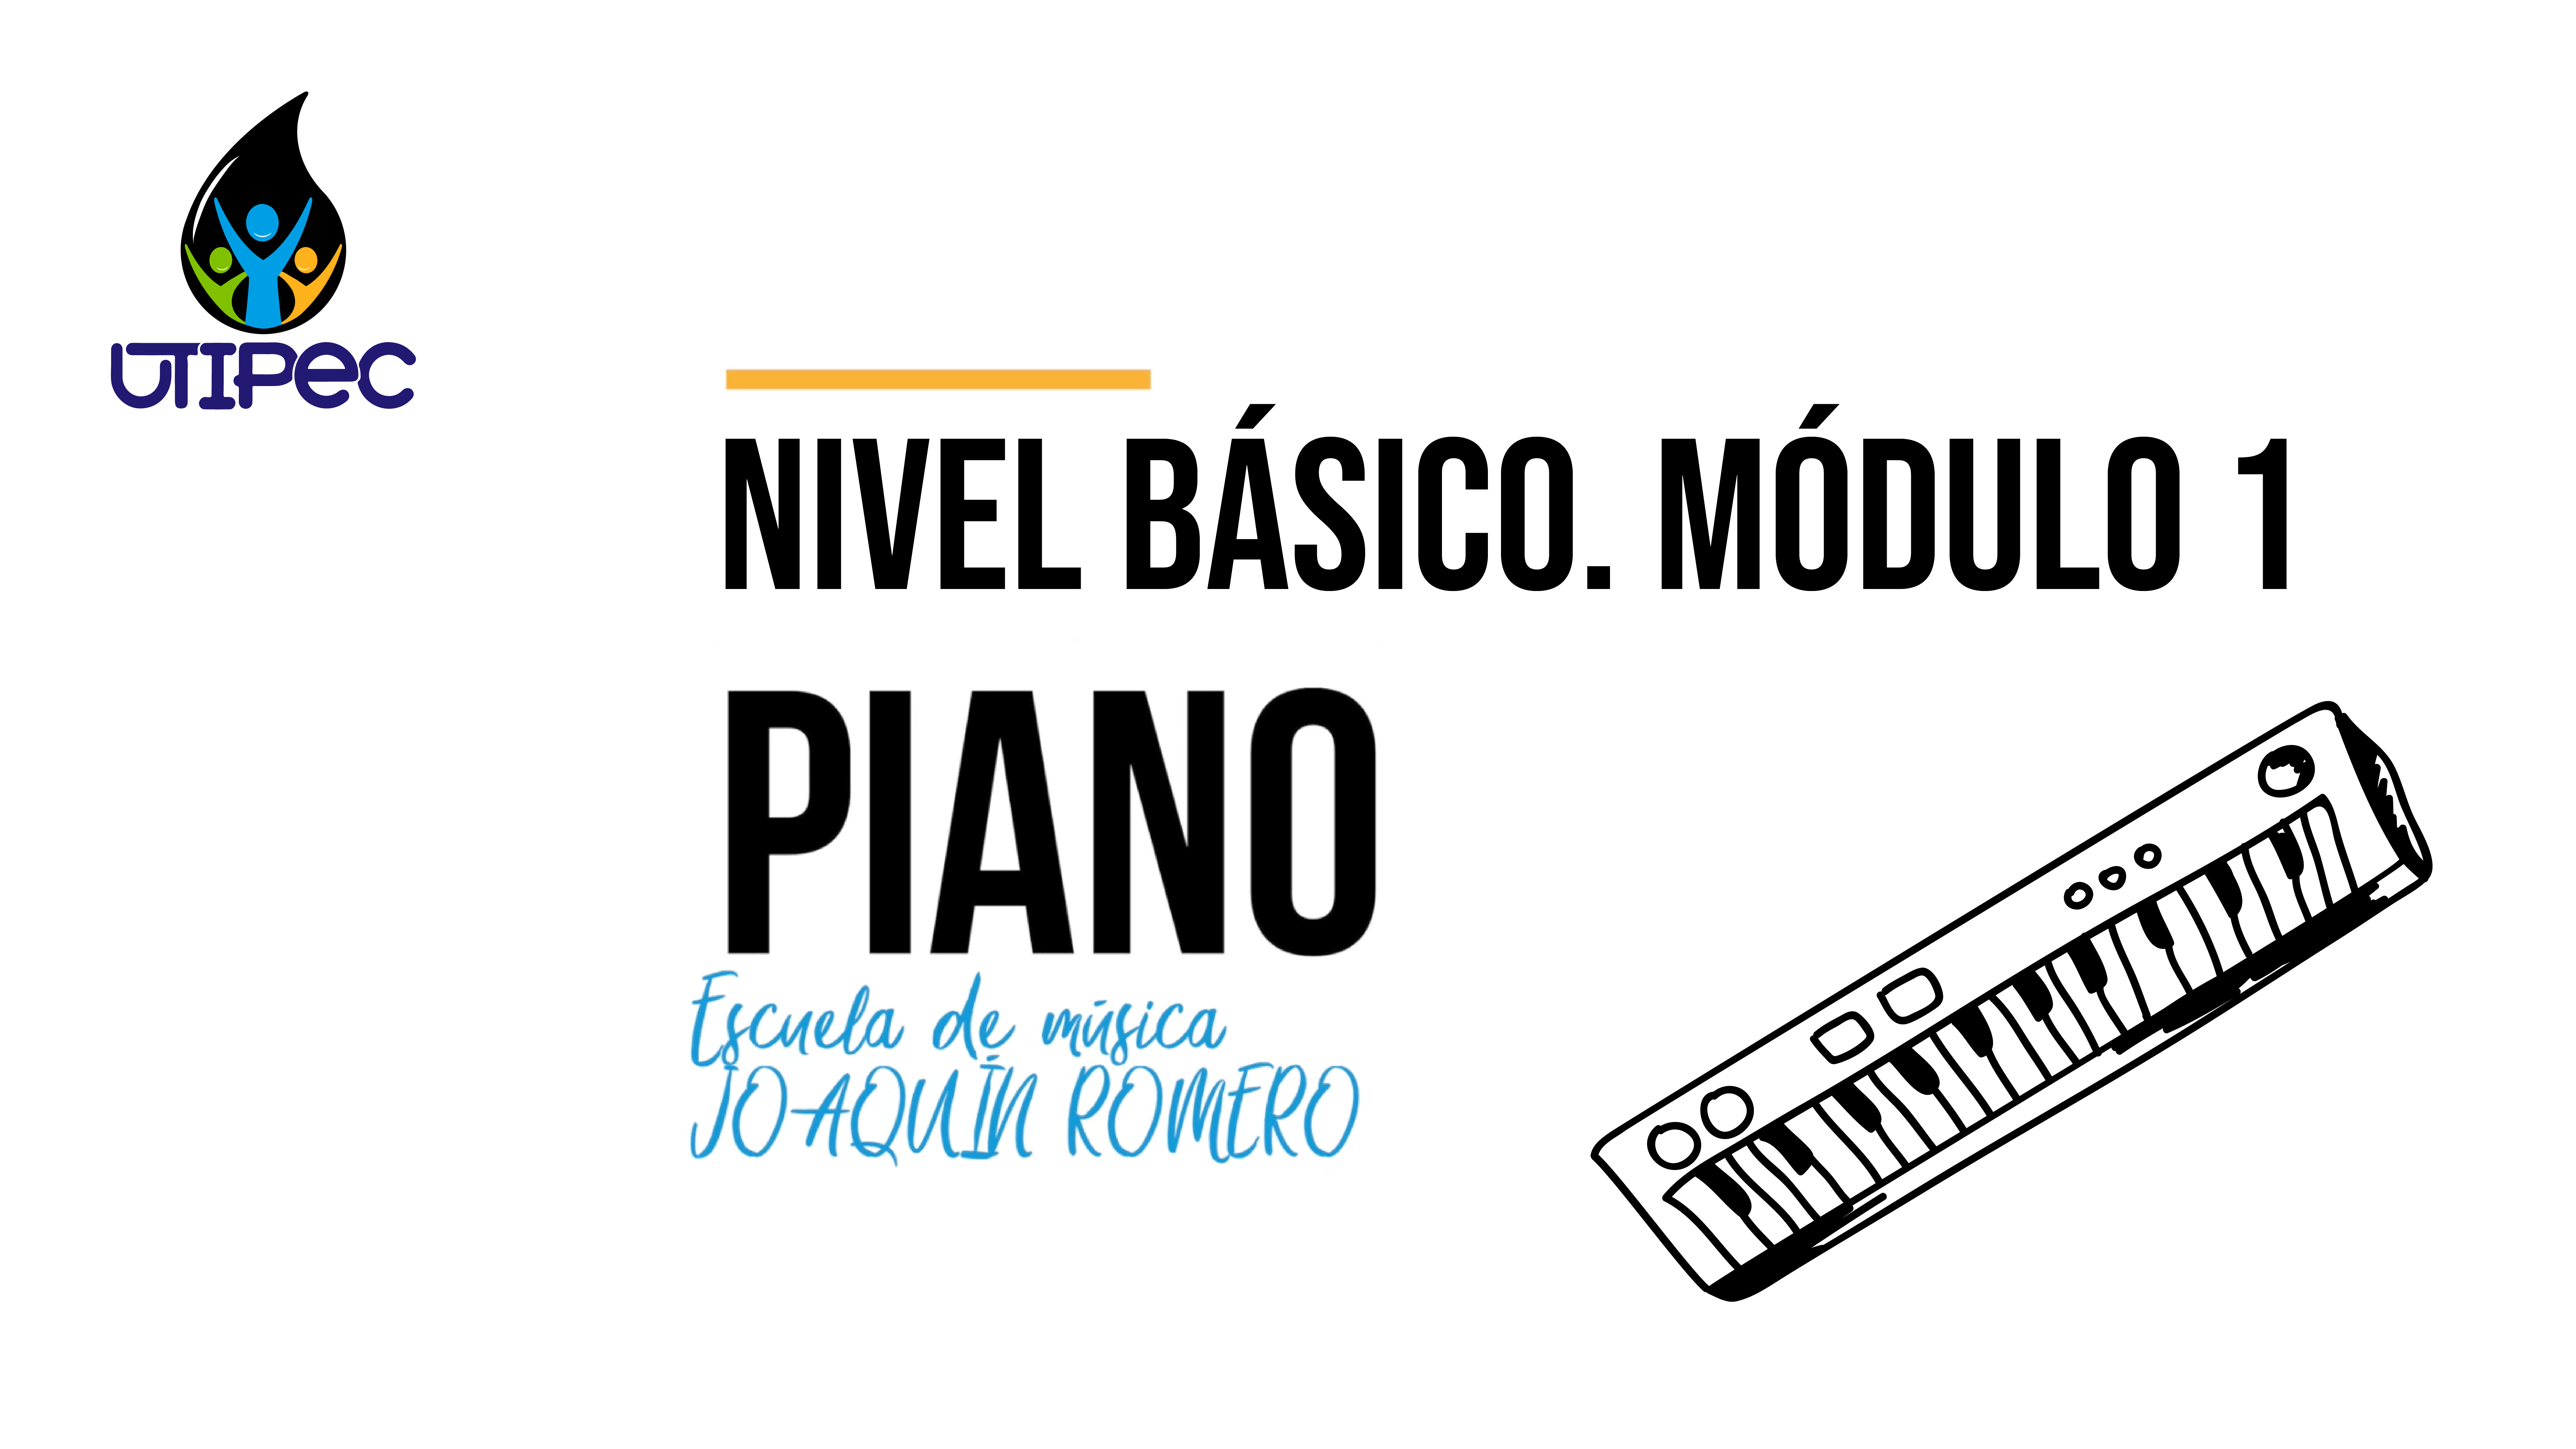 PIANO NIVEL BÁSICO MODULO 1